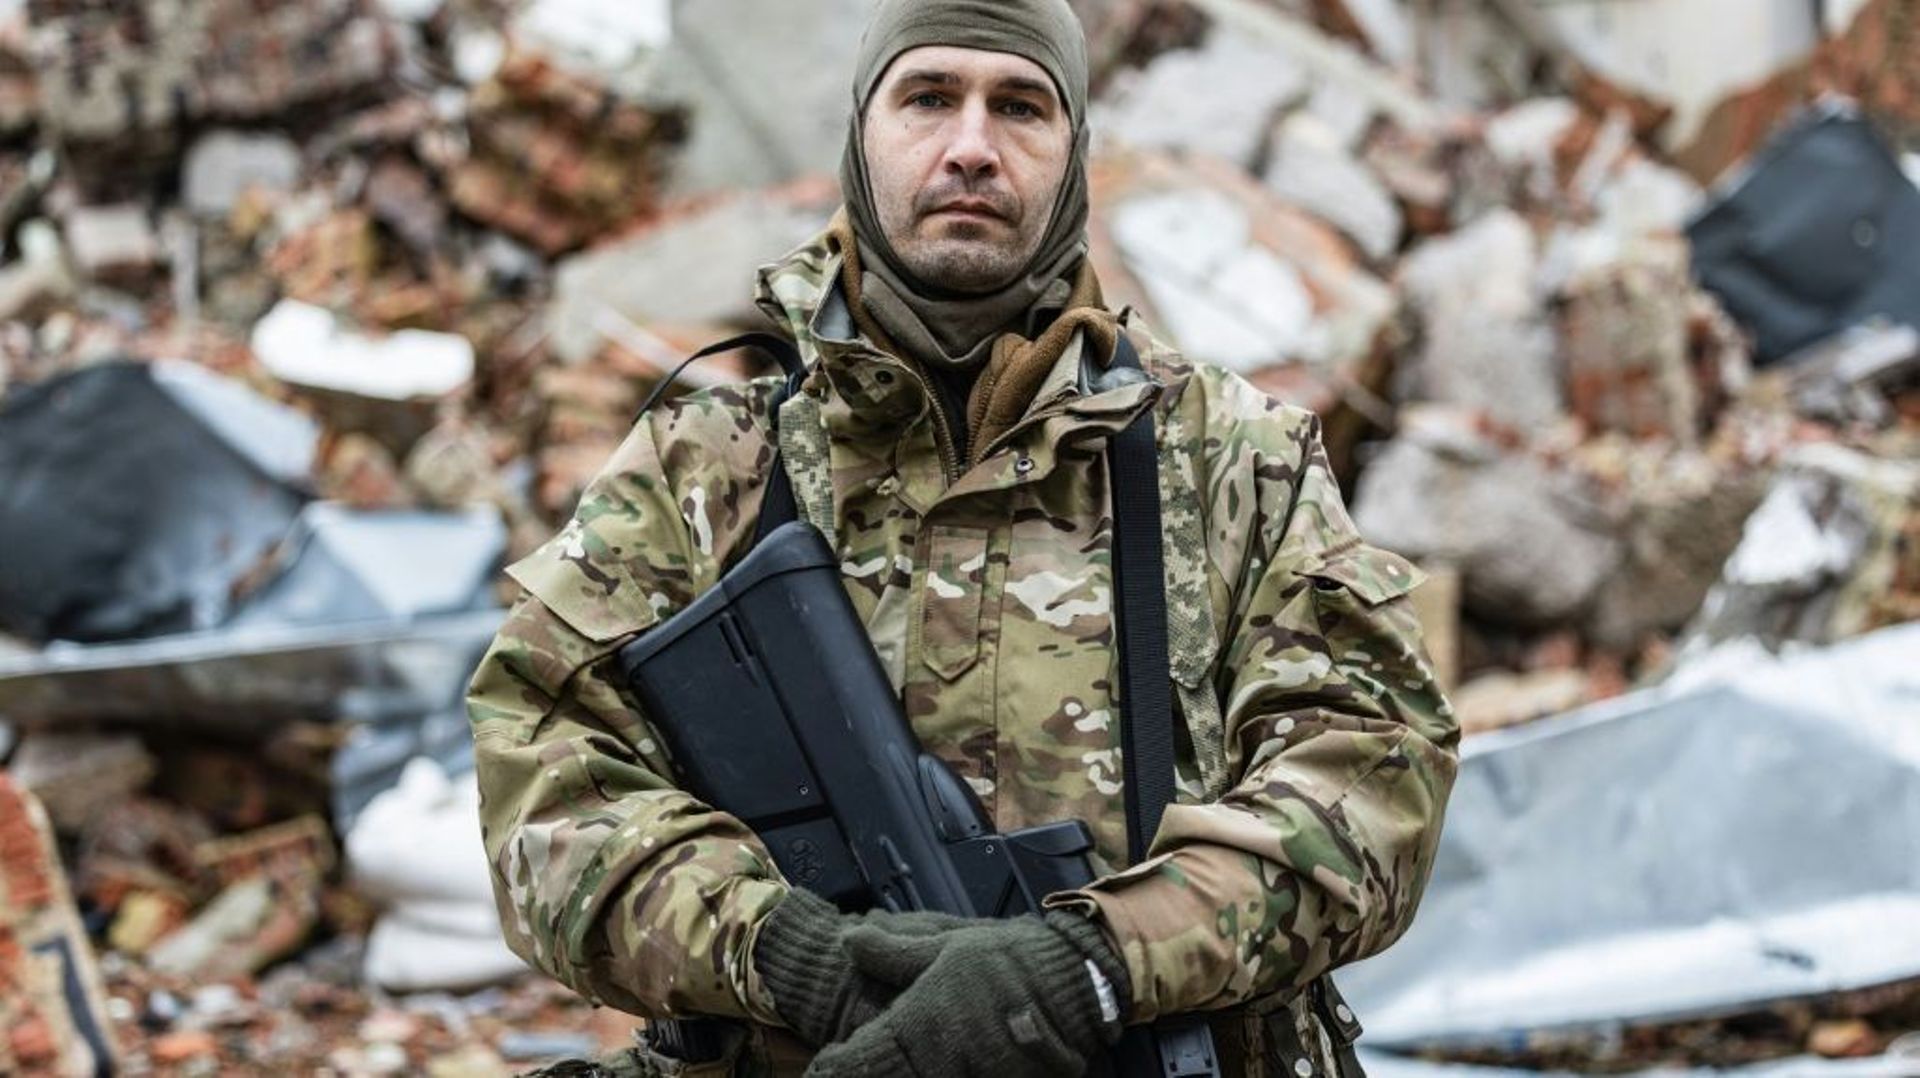 "Caesar", 50 ans, un Russe qui a rejoint la légion "Liberté de la Russie" pour combattre avec l'armée ukrainienne, à Dolina, dans l'est de l'Ukraine, le 26 décembre 2022.